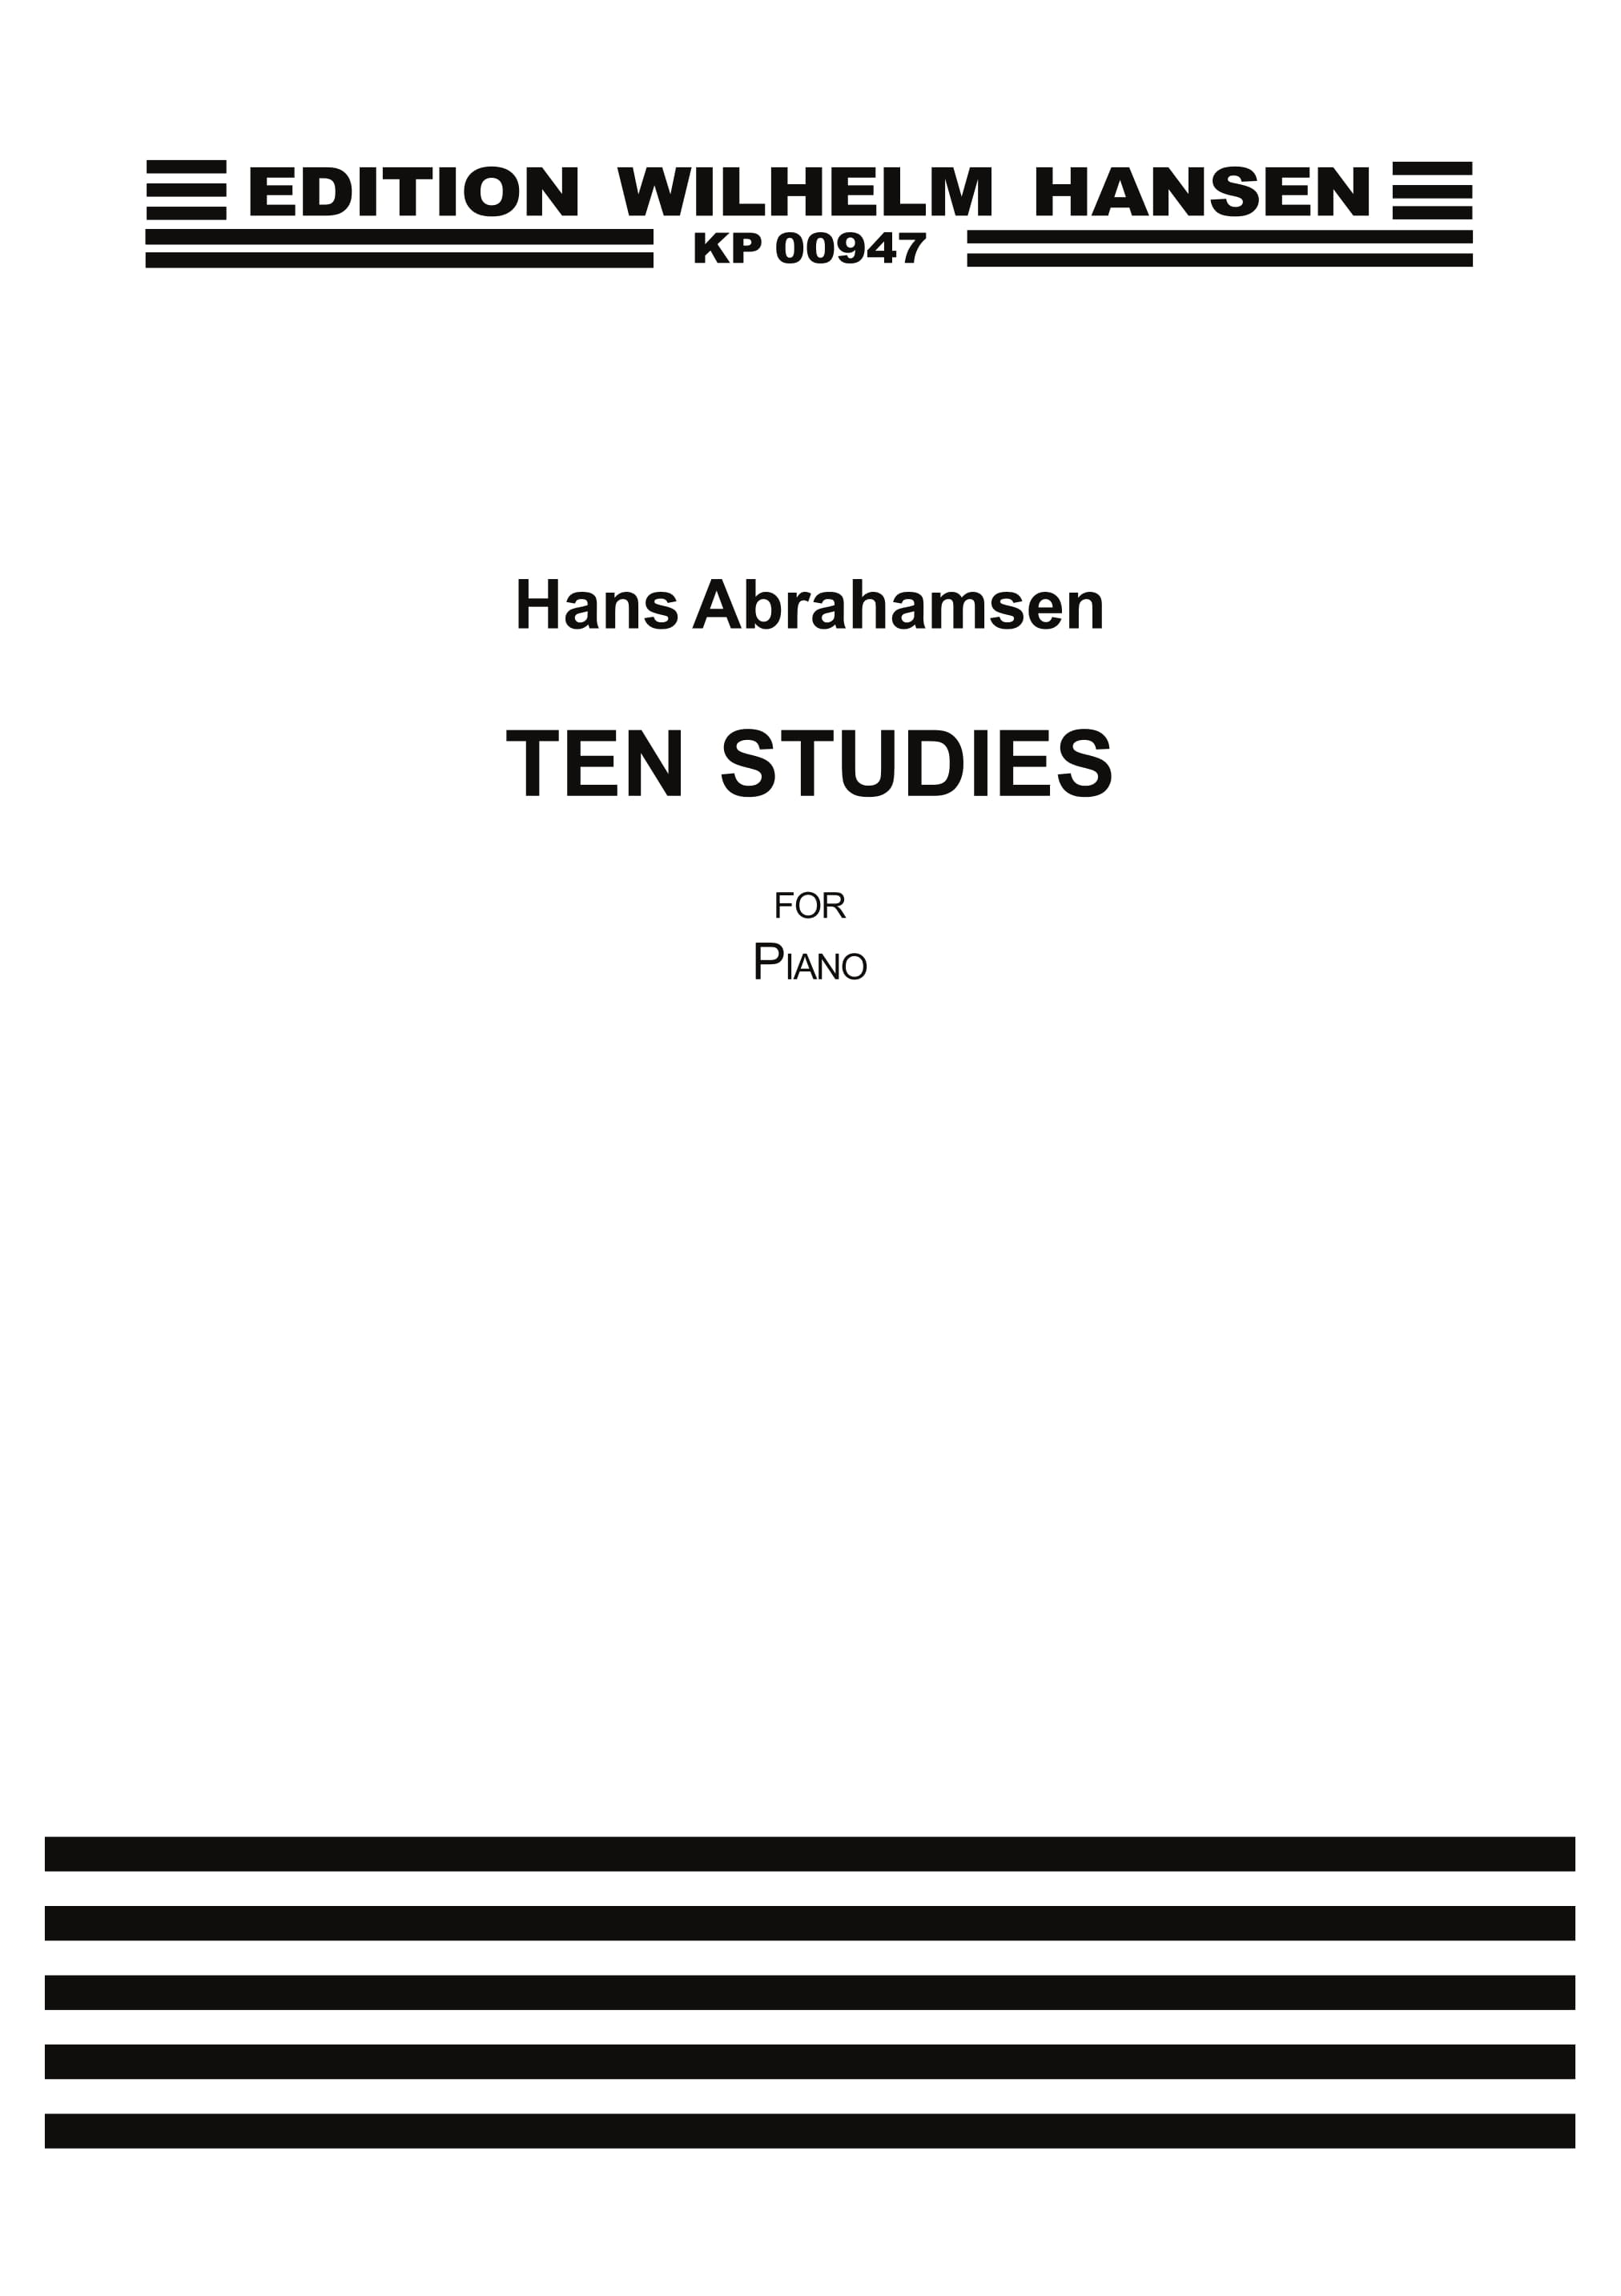 Hans Abrahamsen: Ten Studies For Piano: Piano: Instrumental Work